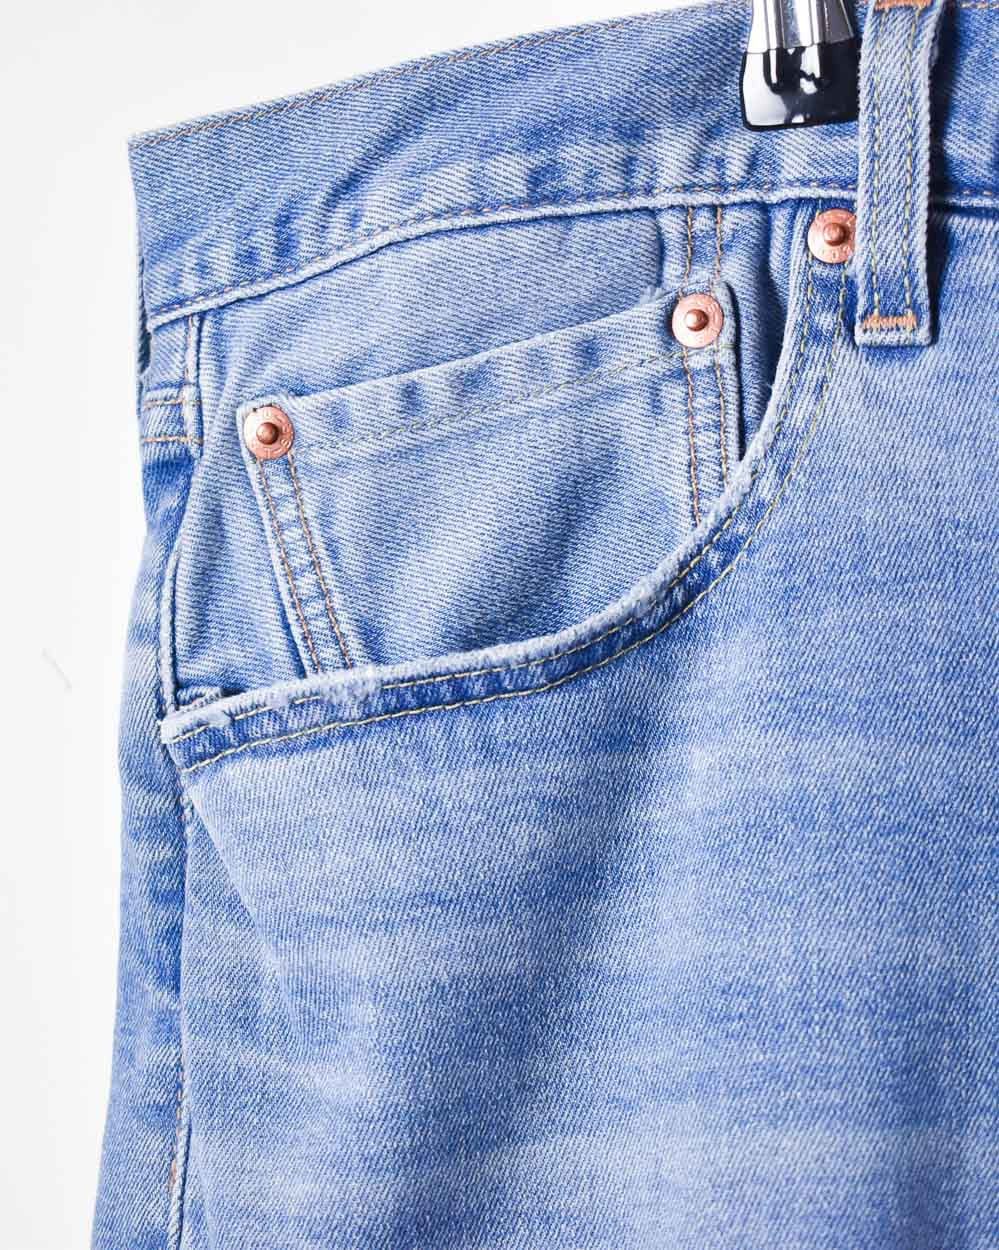 Blue Levi's 501 Jeans - W38 L29